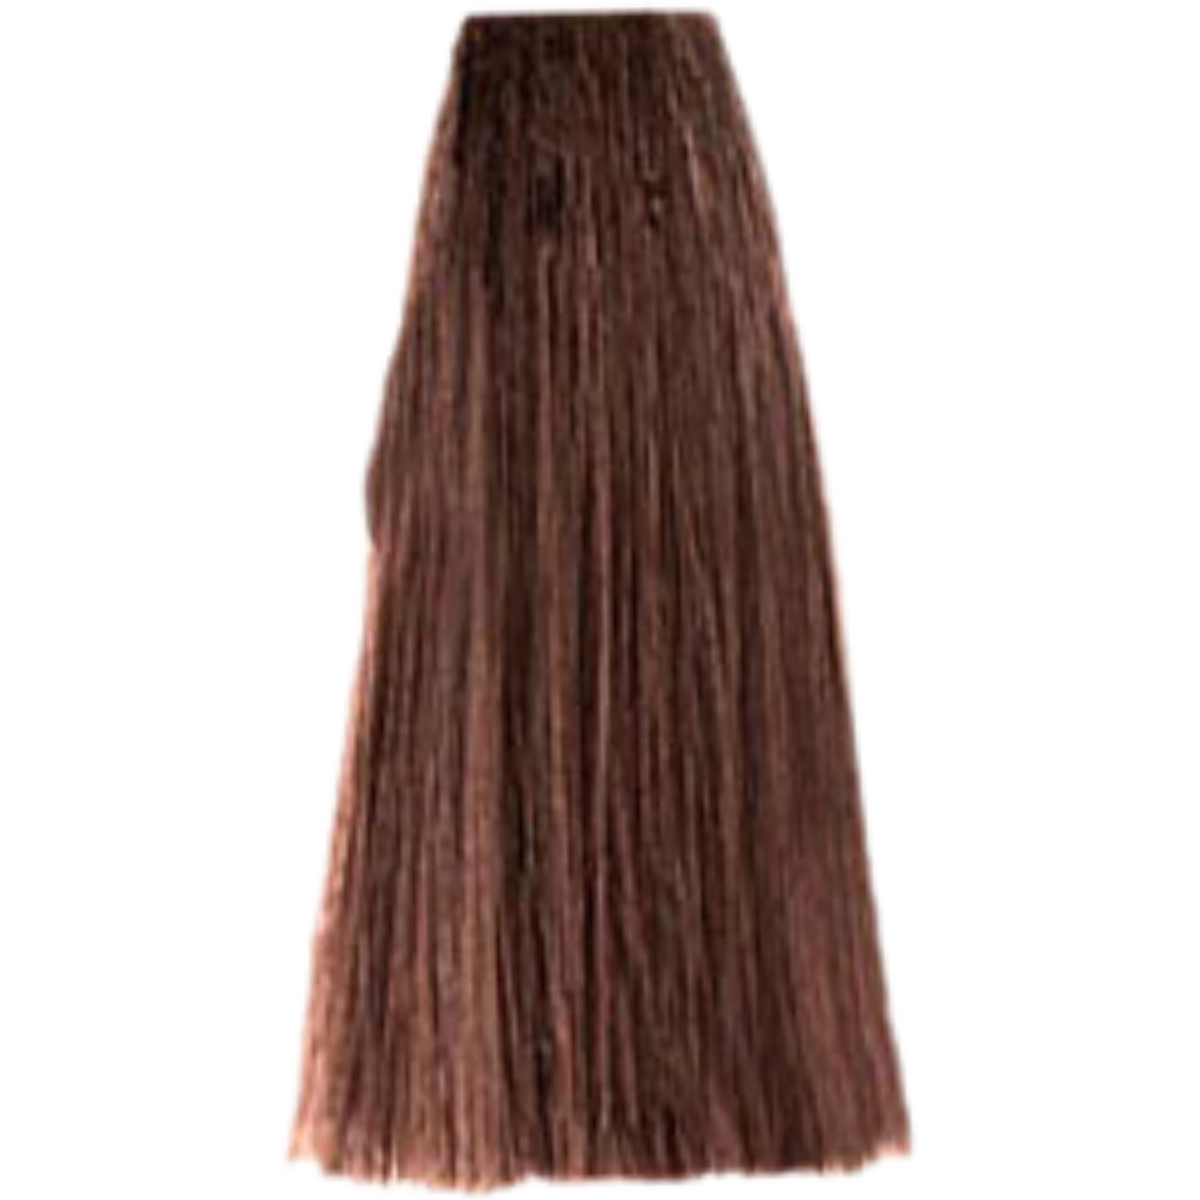 צבע שיער 6.35 DARK CHOCOLATE BLONDE פארמויטה FarmaVita צבע לשיער 100 גרם